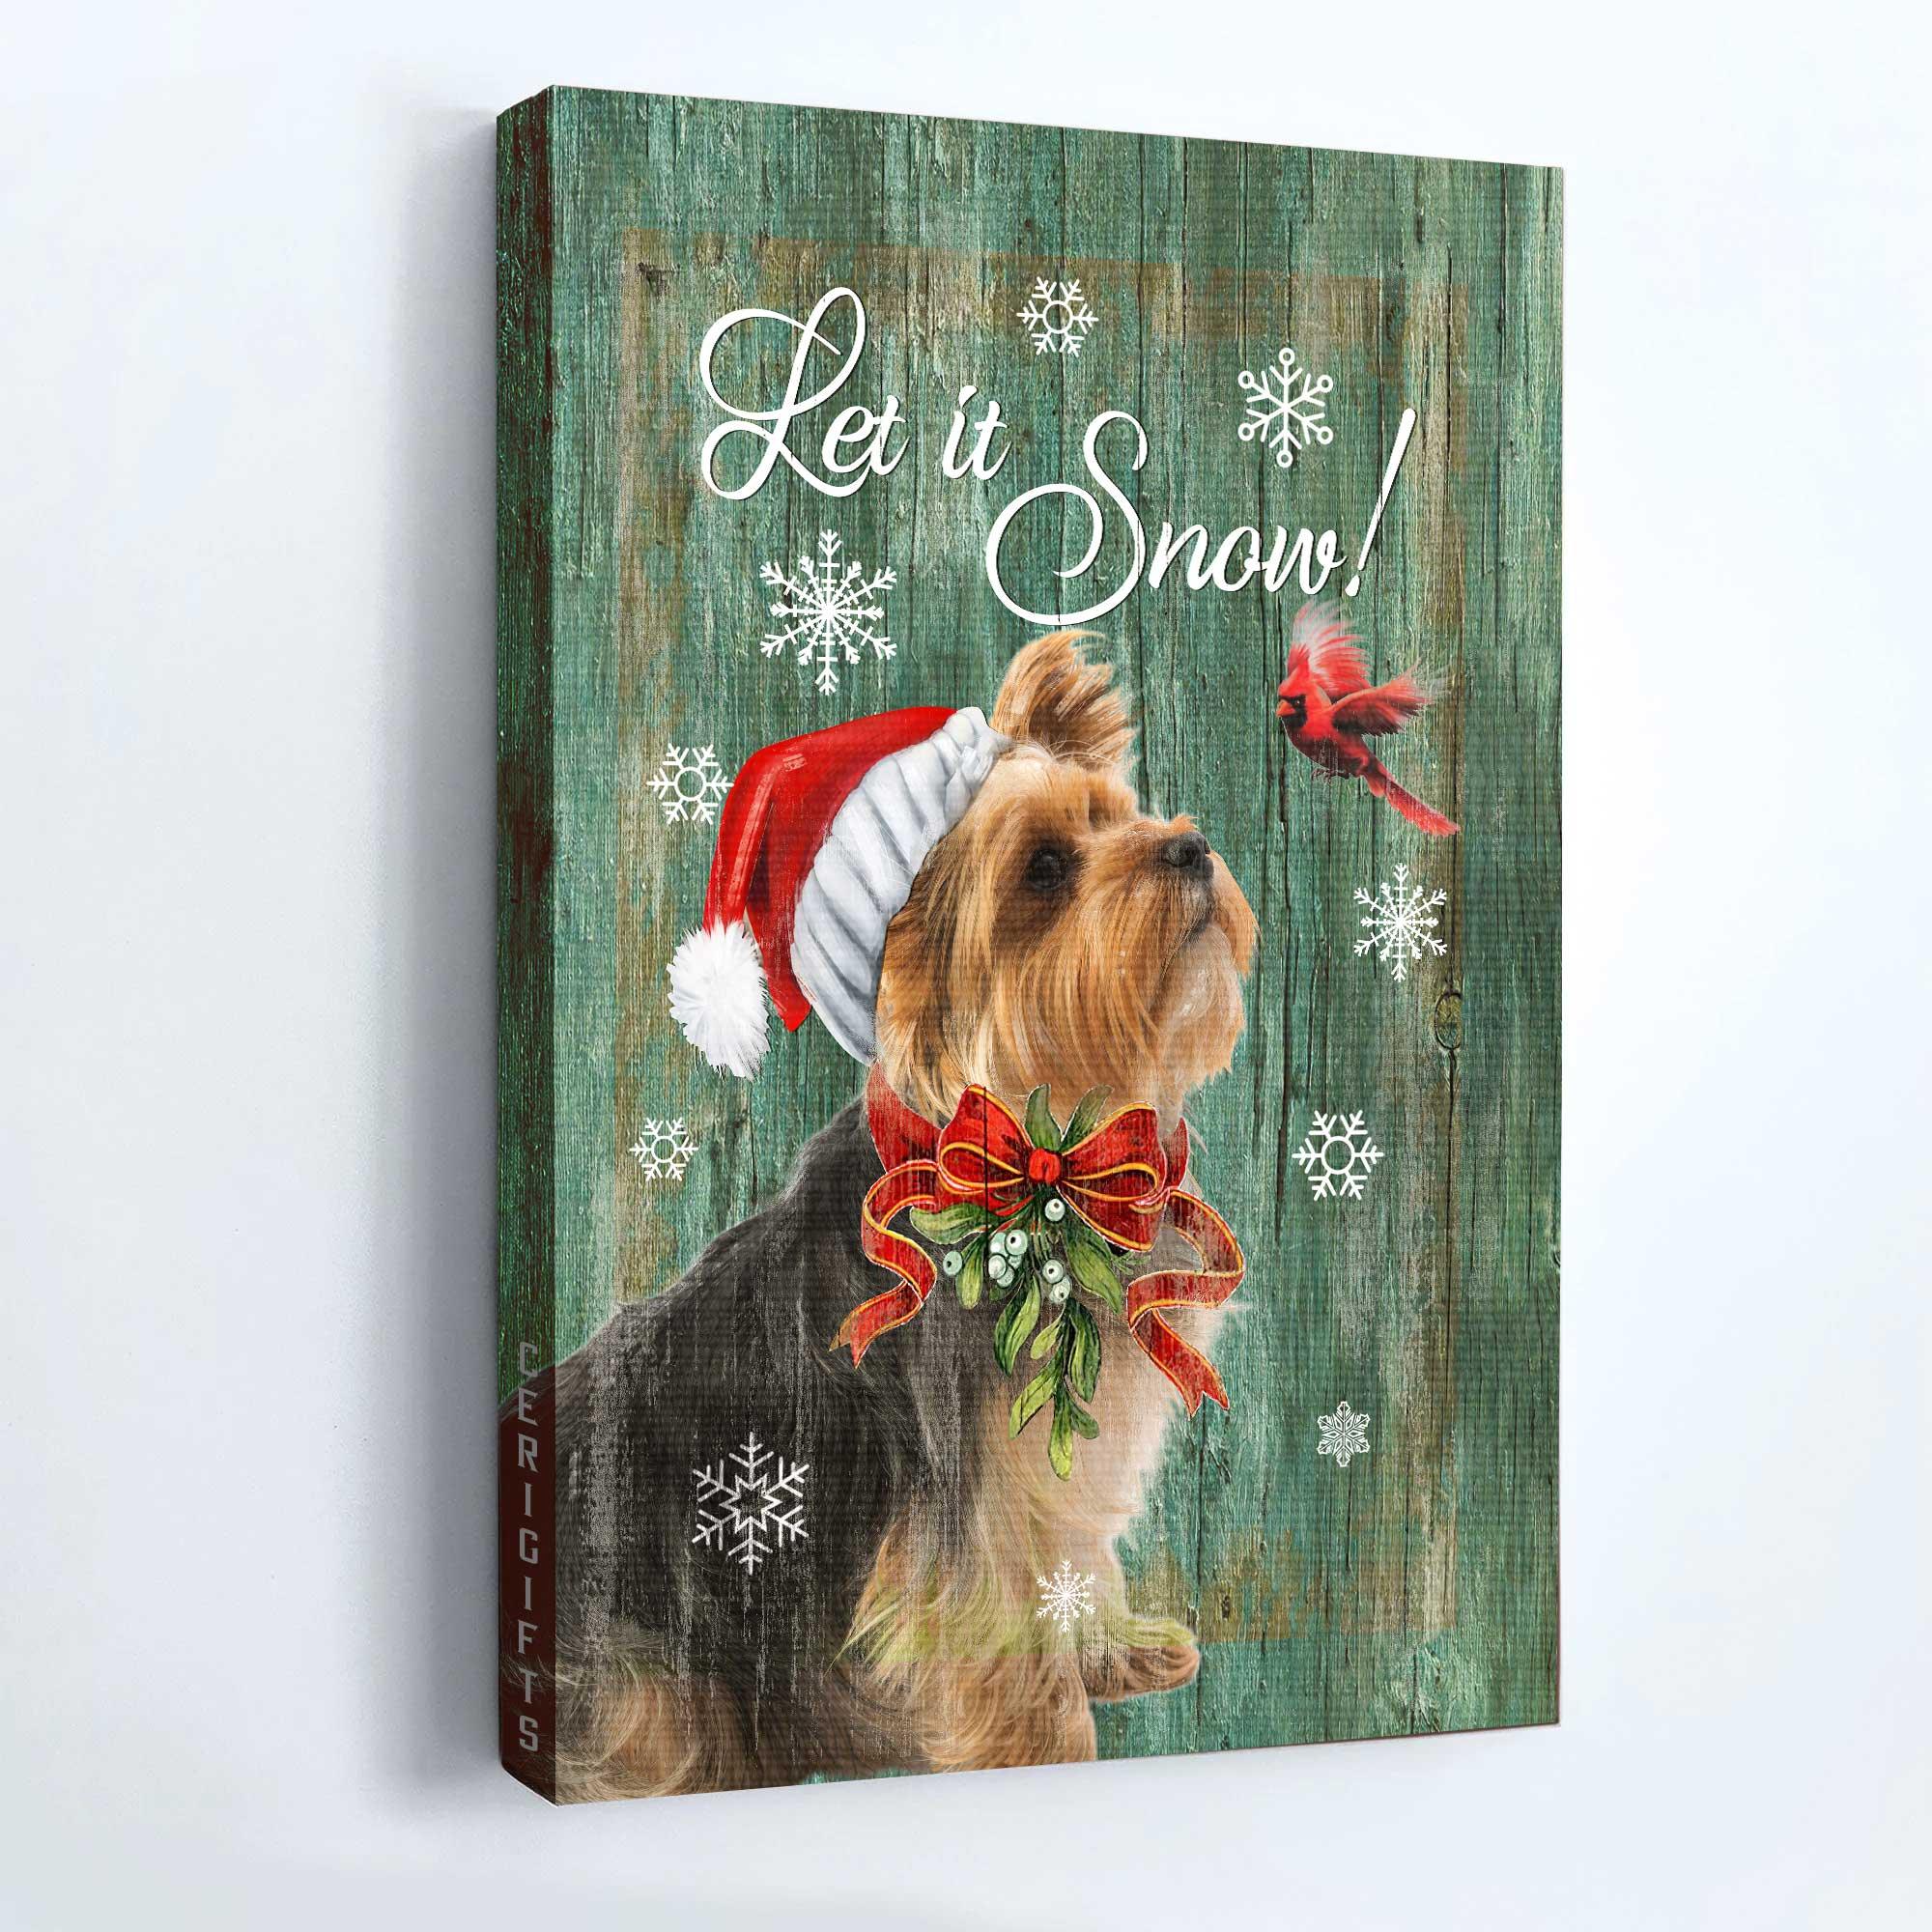 Yorkshire Terrier Premium Wrapped Portrait Canvas - Yorkshire Terrier, Cardinal, Christmas, Let It Snow - Gift For Yorkshire Terrier Lover, Dog Lovers - Amzanimalsgift